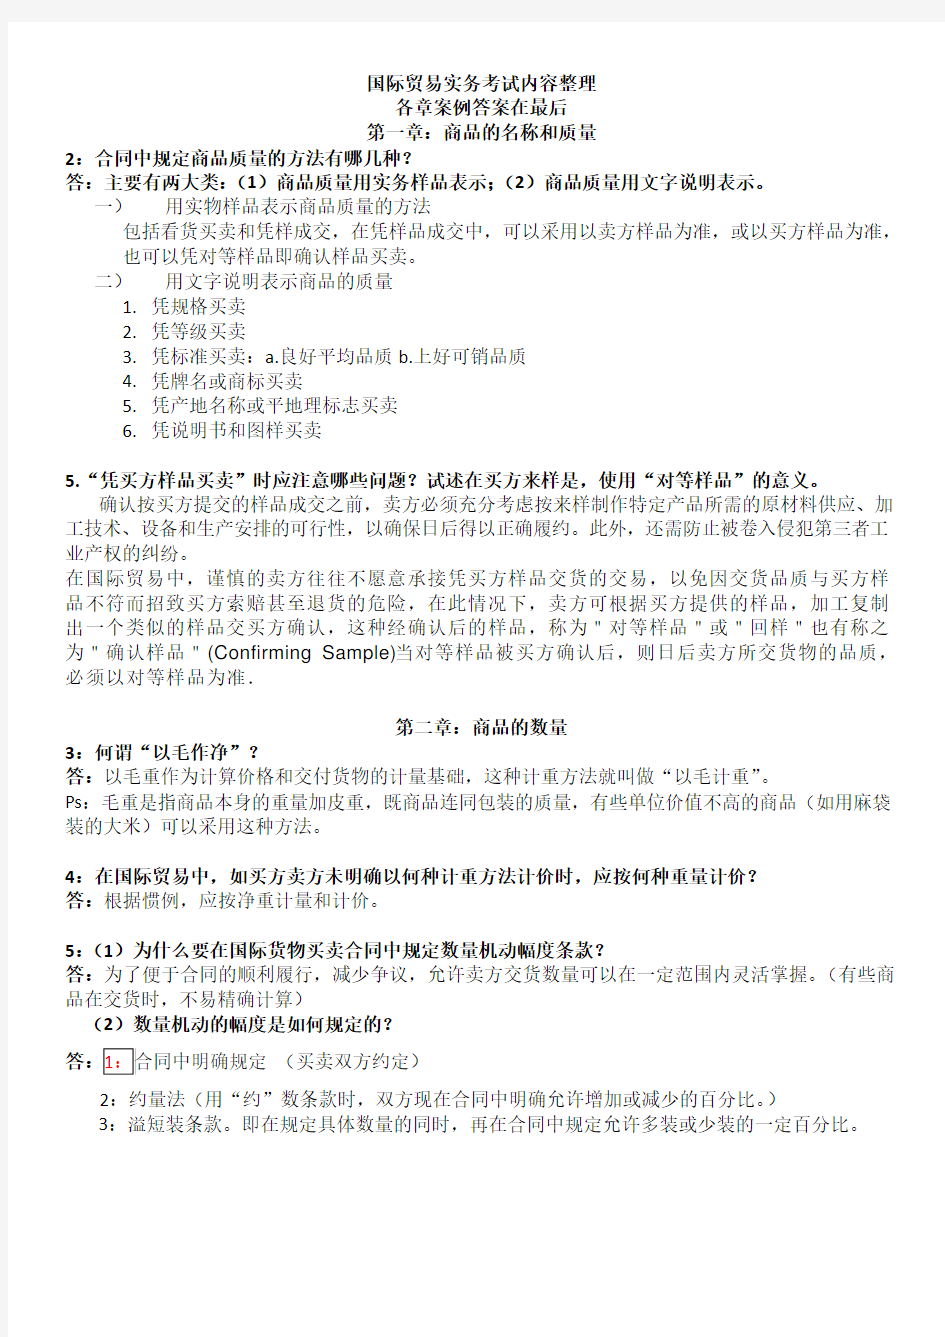 吴百福进出口贸易实务教程第七版考试复习资料便携版要点